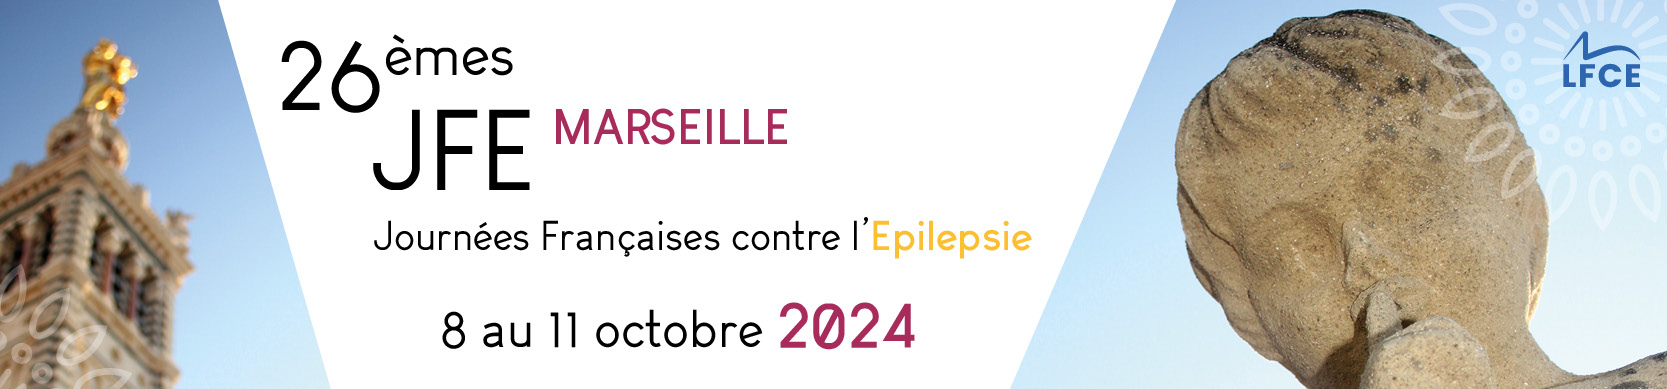 26èmes journées Française de l'épilepsie - JFE Marseille 2024